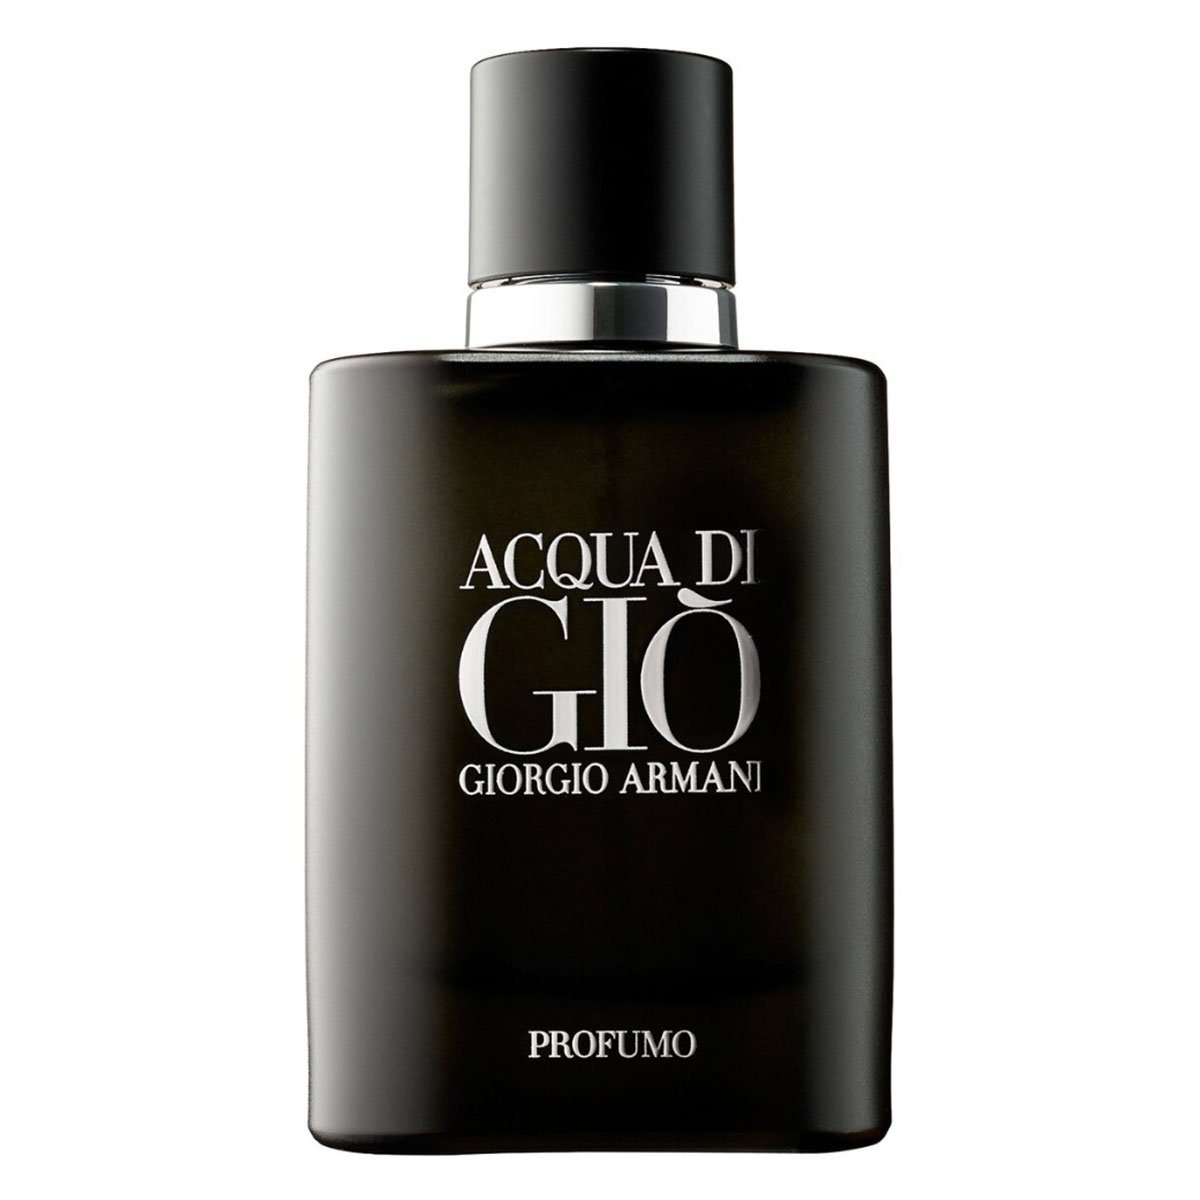 Giorgio Armani Acqua Di Gio Profumo Edp For Men 125ml-Perfume - AllurebeautypkGiorgio Armani Acqua Di Gio Profumo Edp For Men 125ml-Perfume